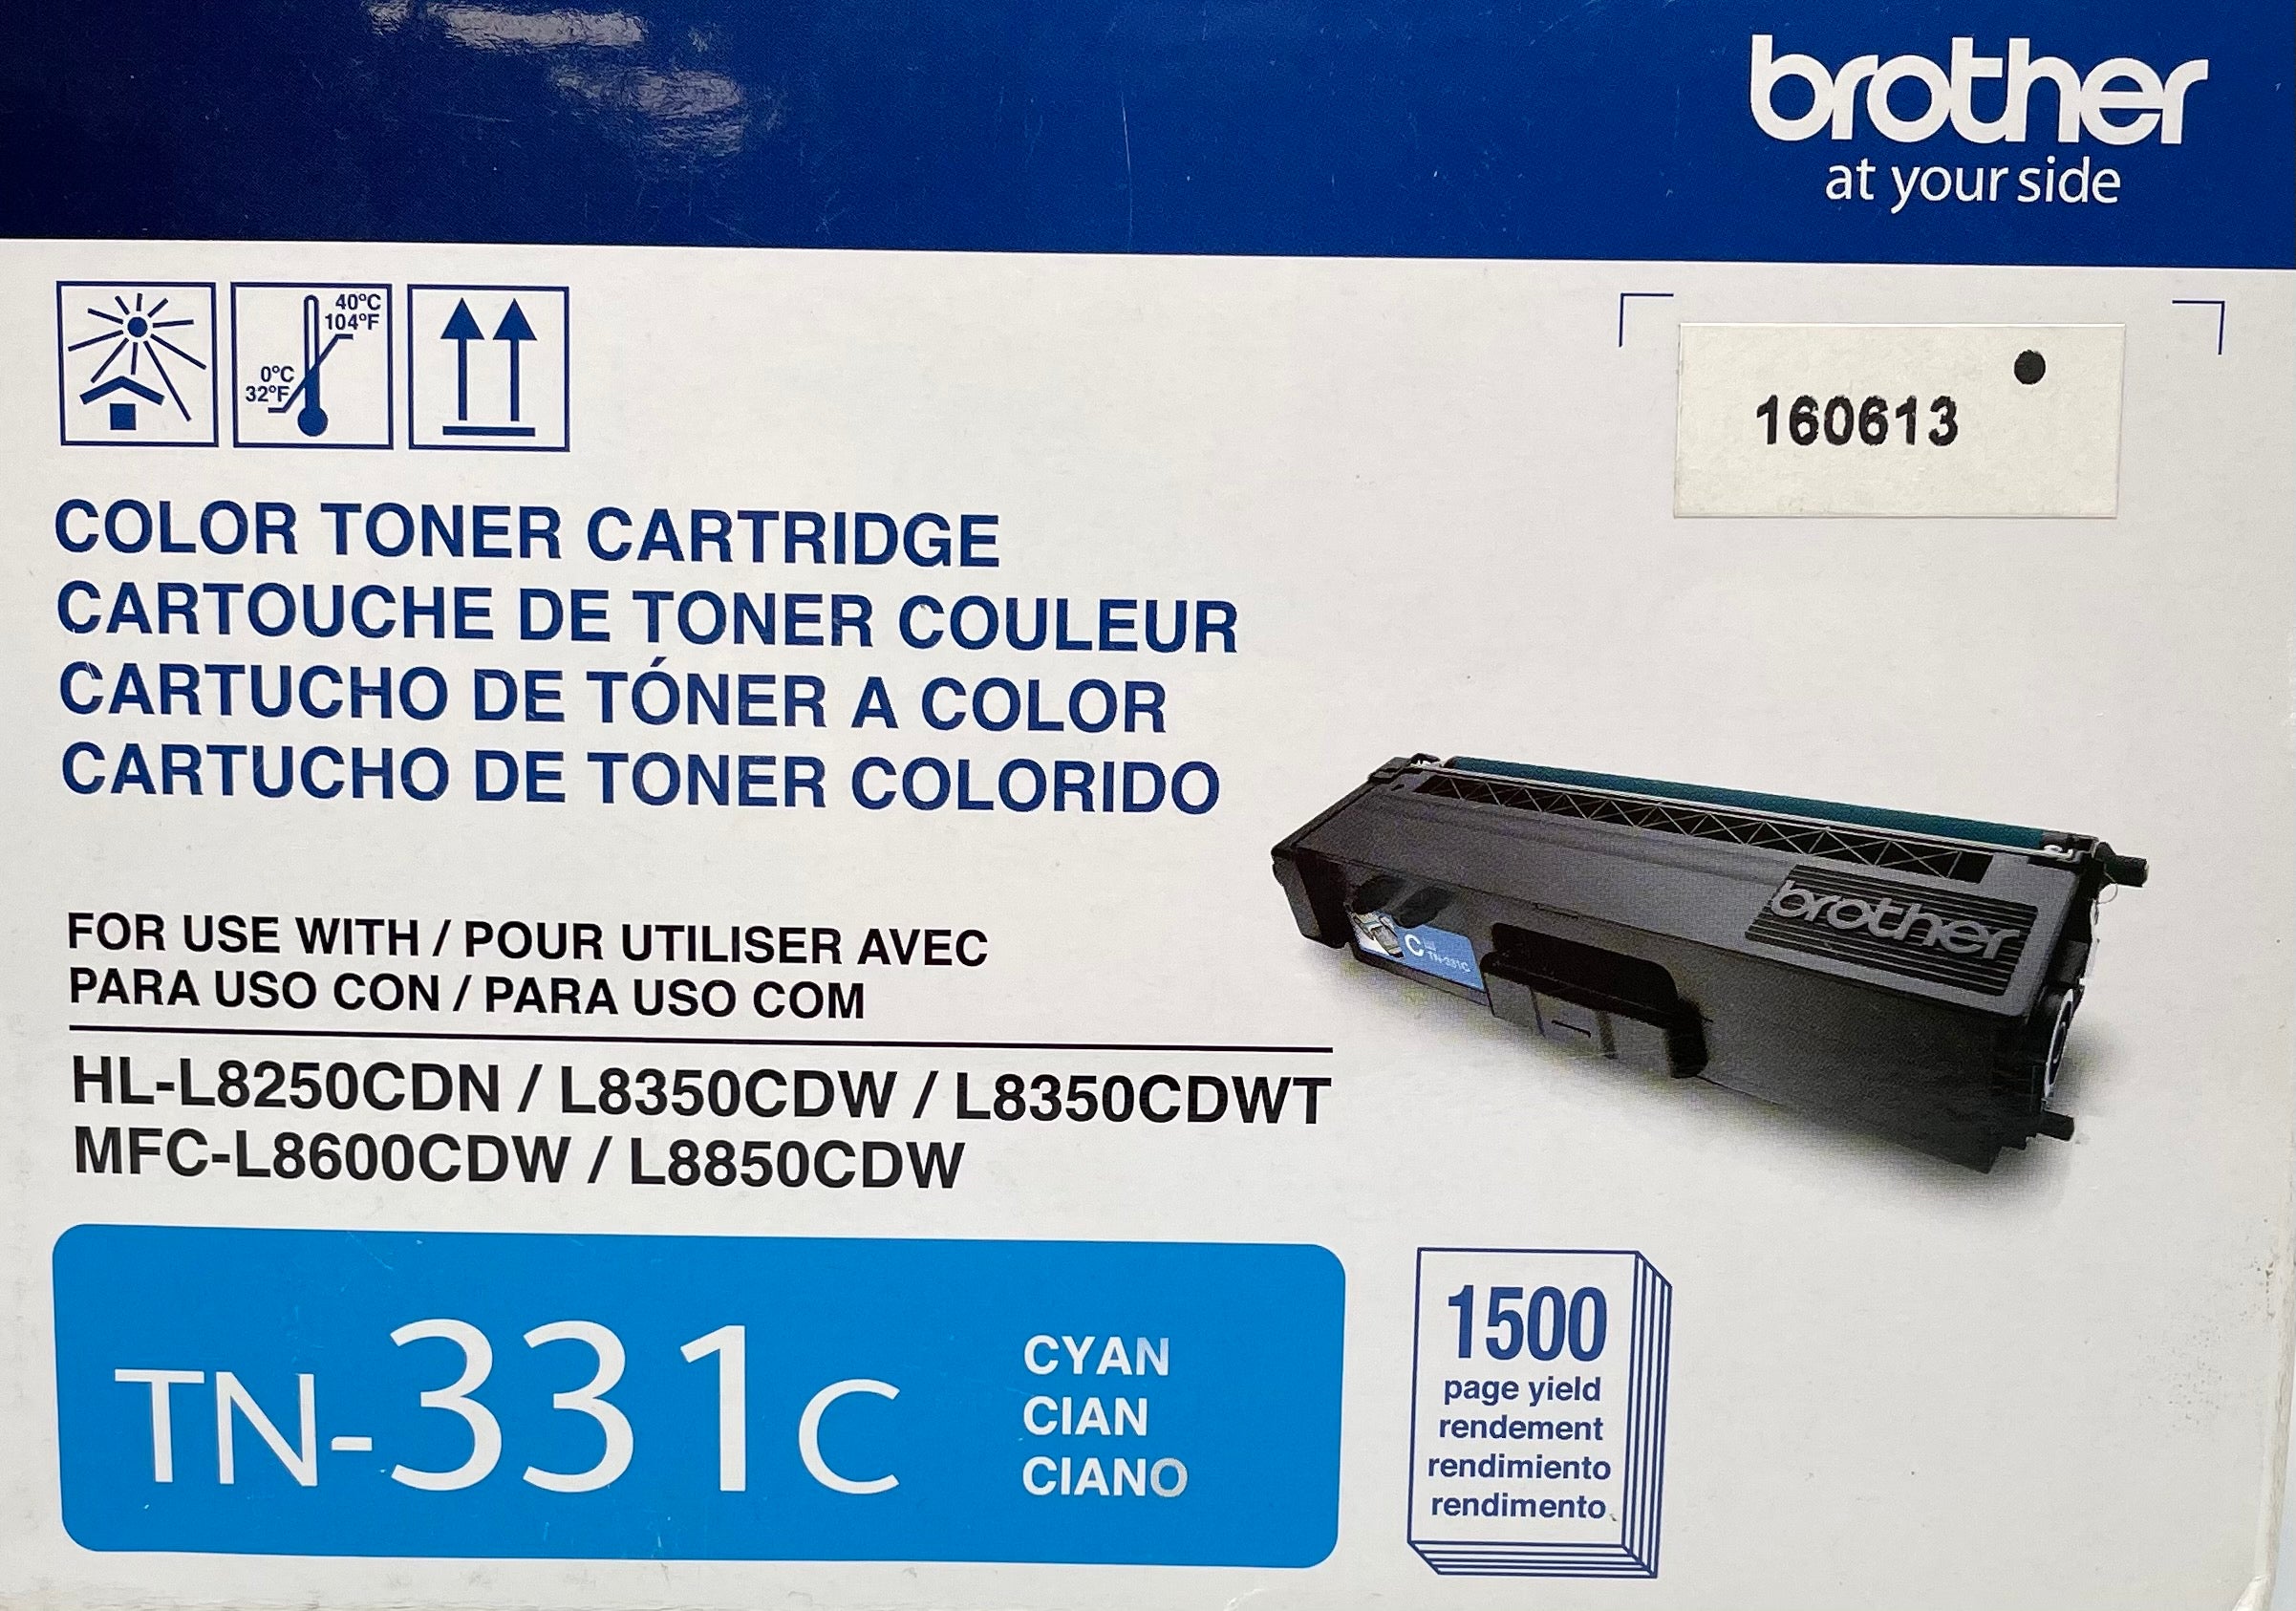 Brother TN-331C Cyan Toner Cartridge